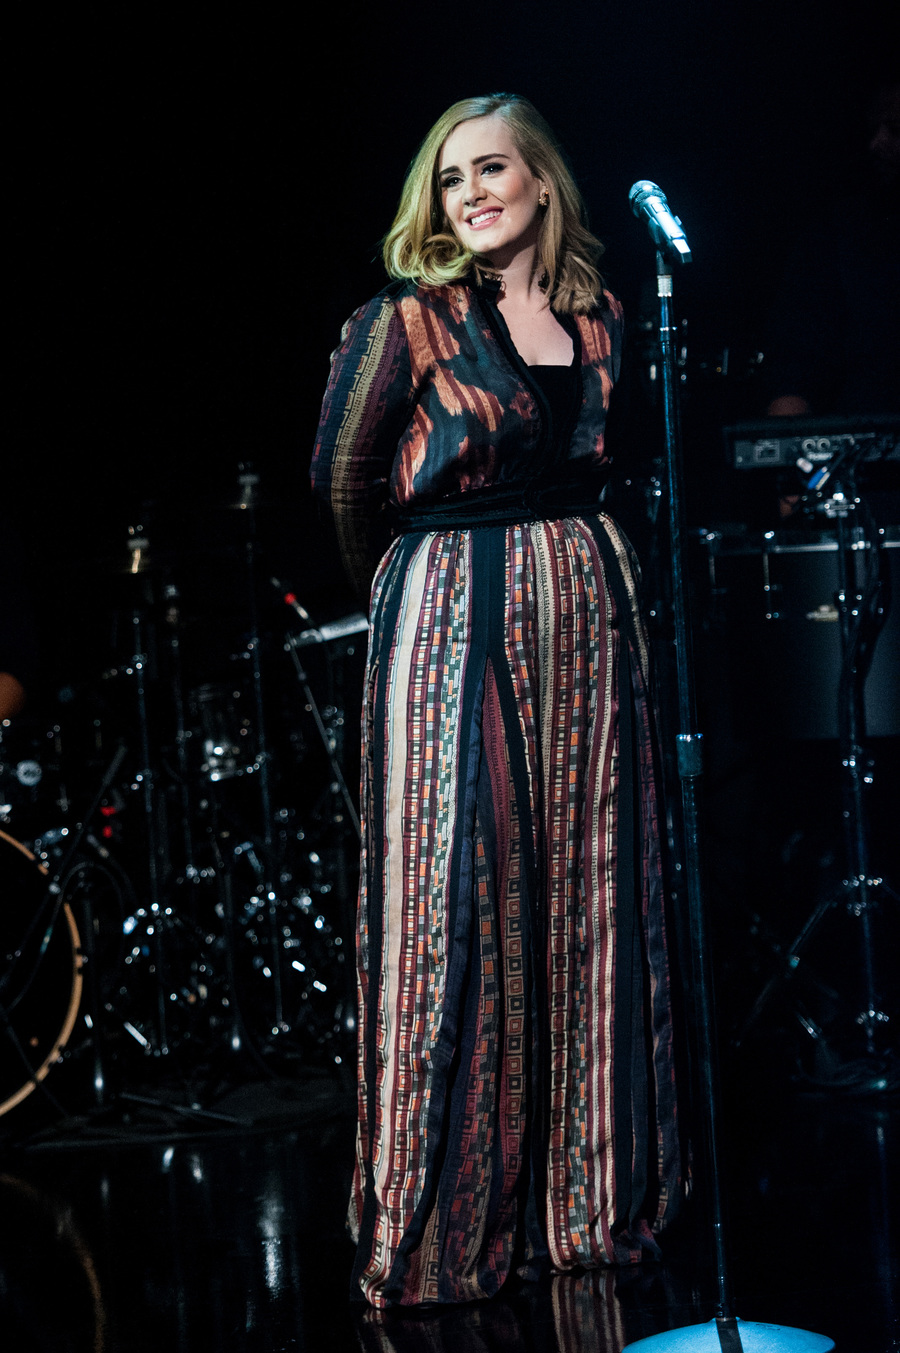 Nggak cuma nyanyi, Adele juga isi beberapa part drum dalam lagu 'Hello' © TPG Images